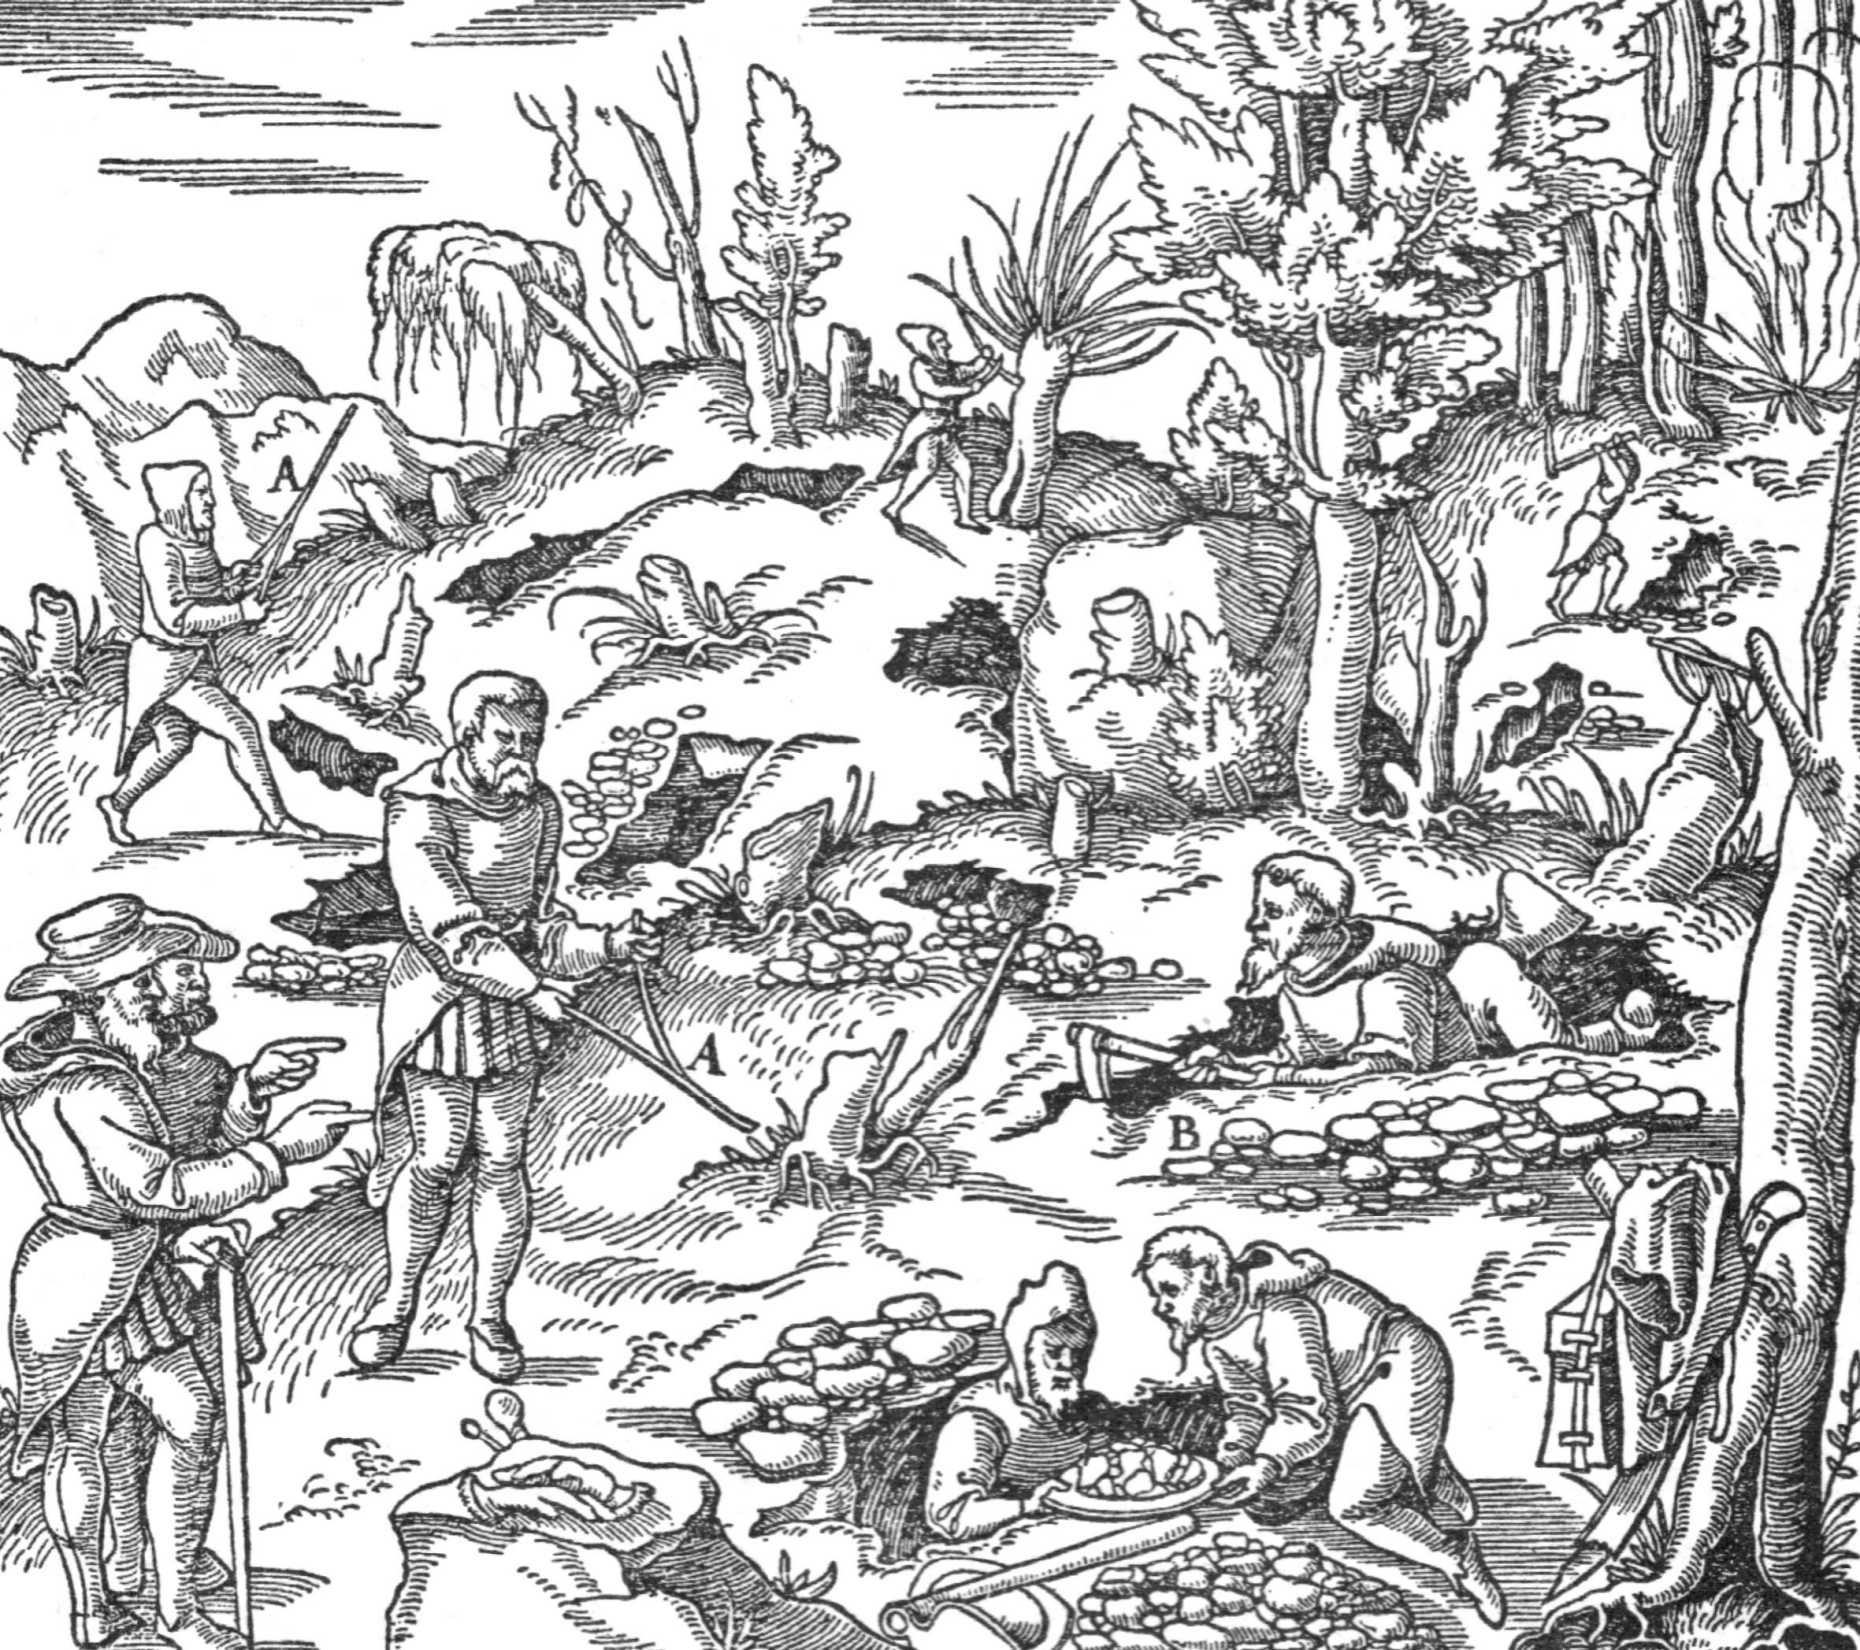 Georgius Agricola, De re metallica libri, 1556